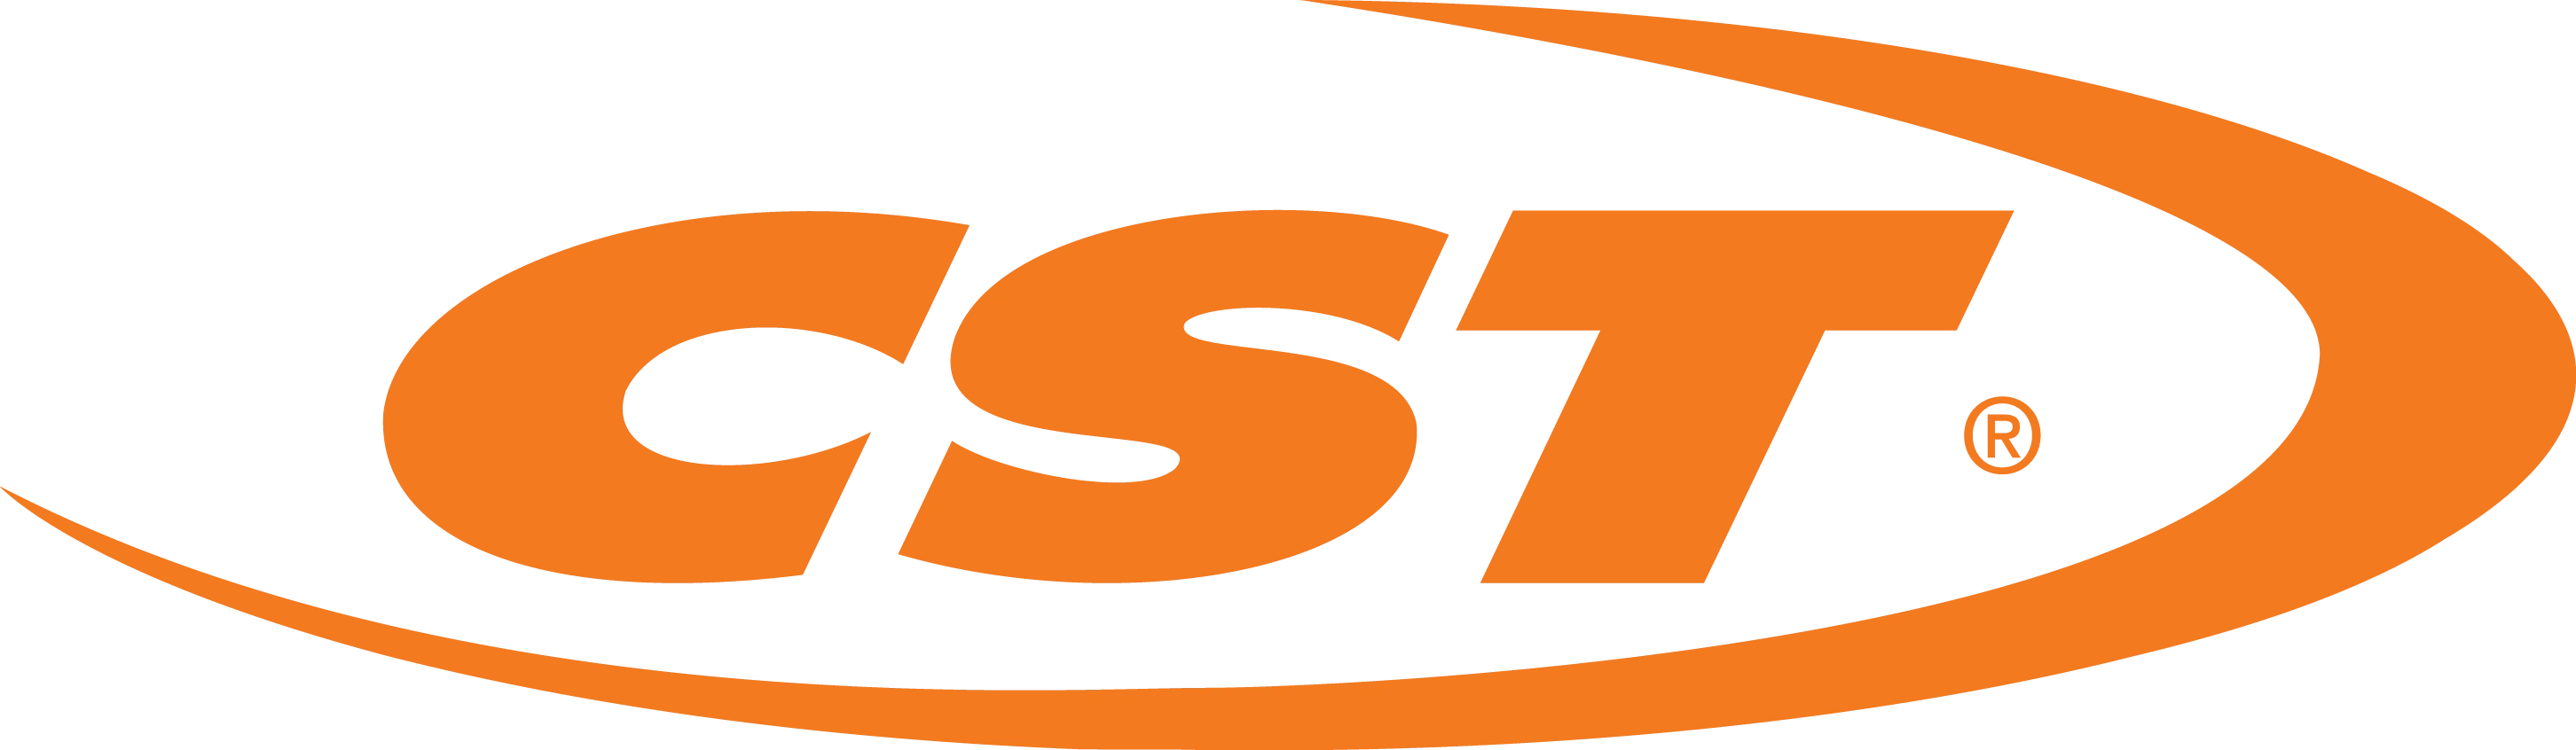 Cst logo